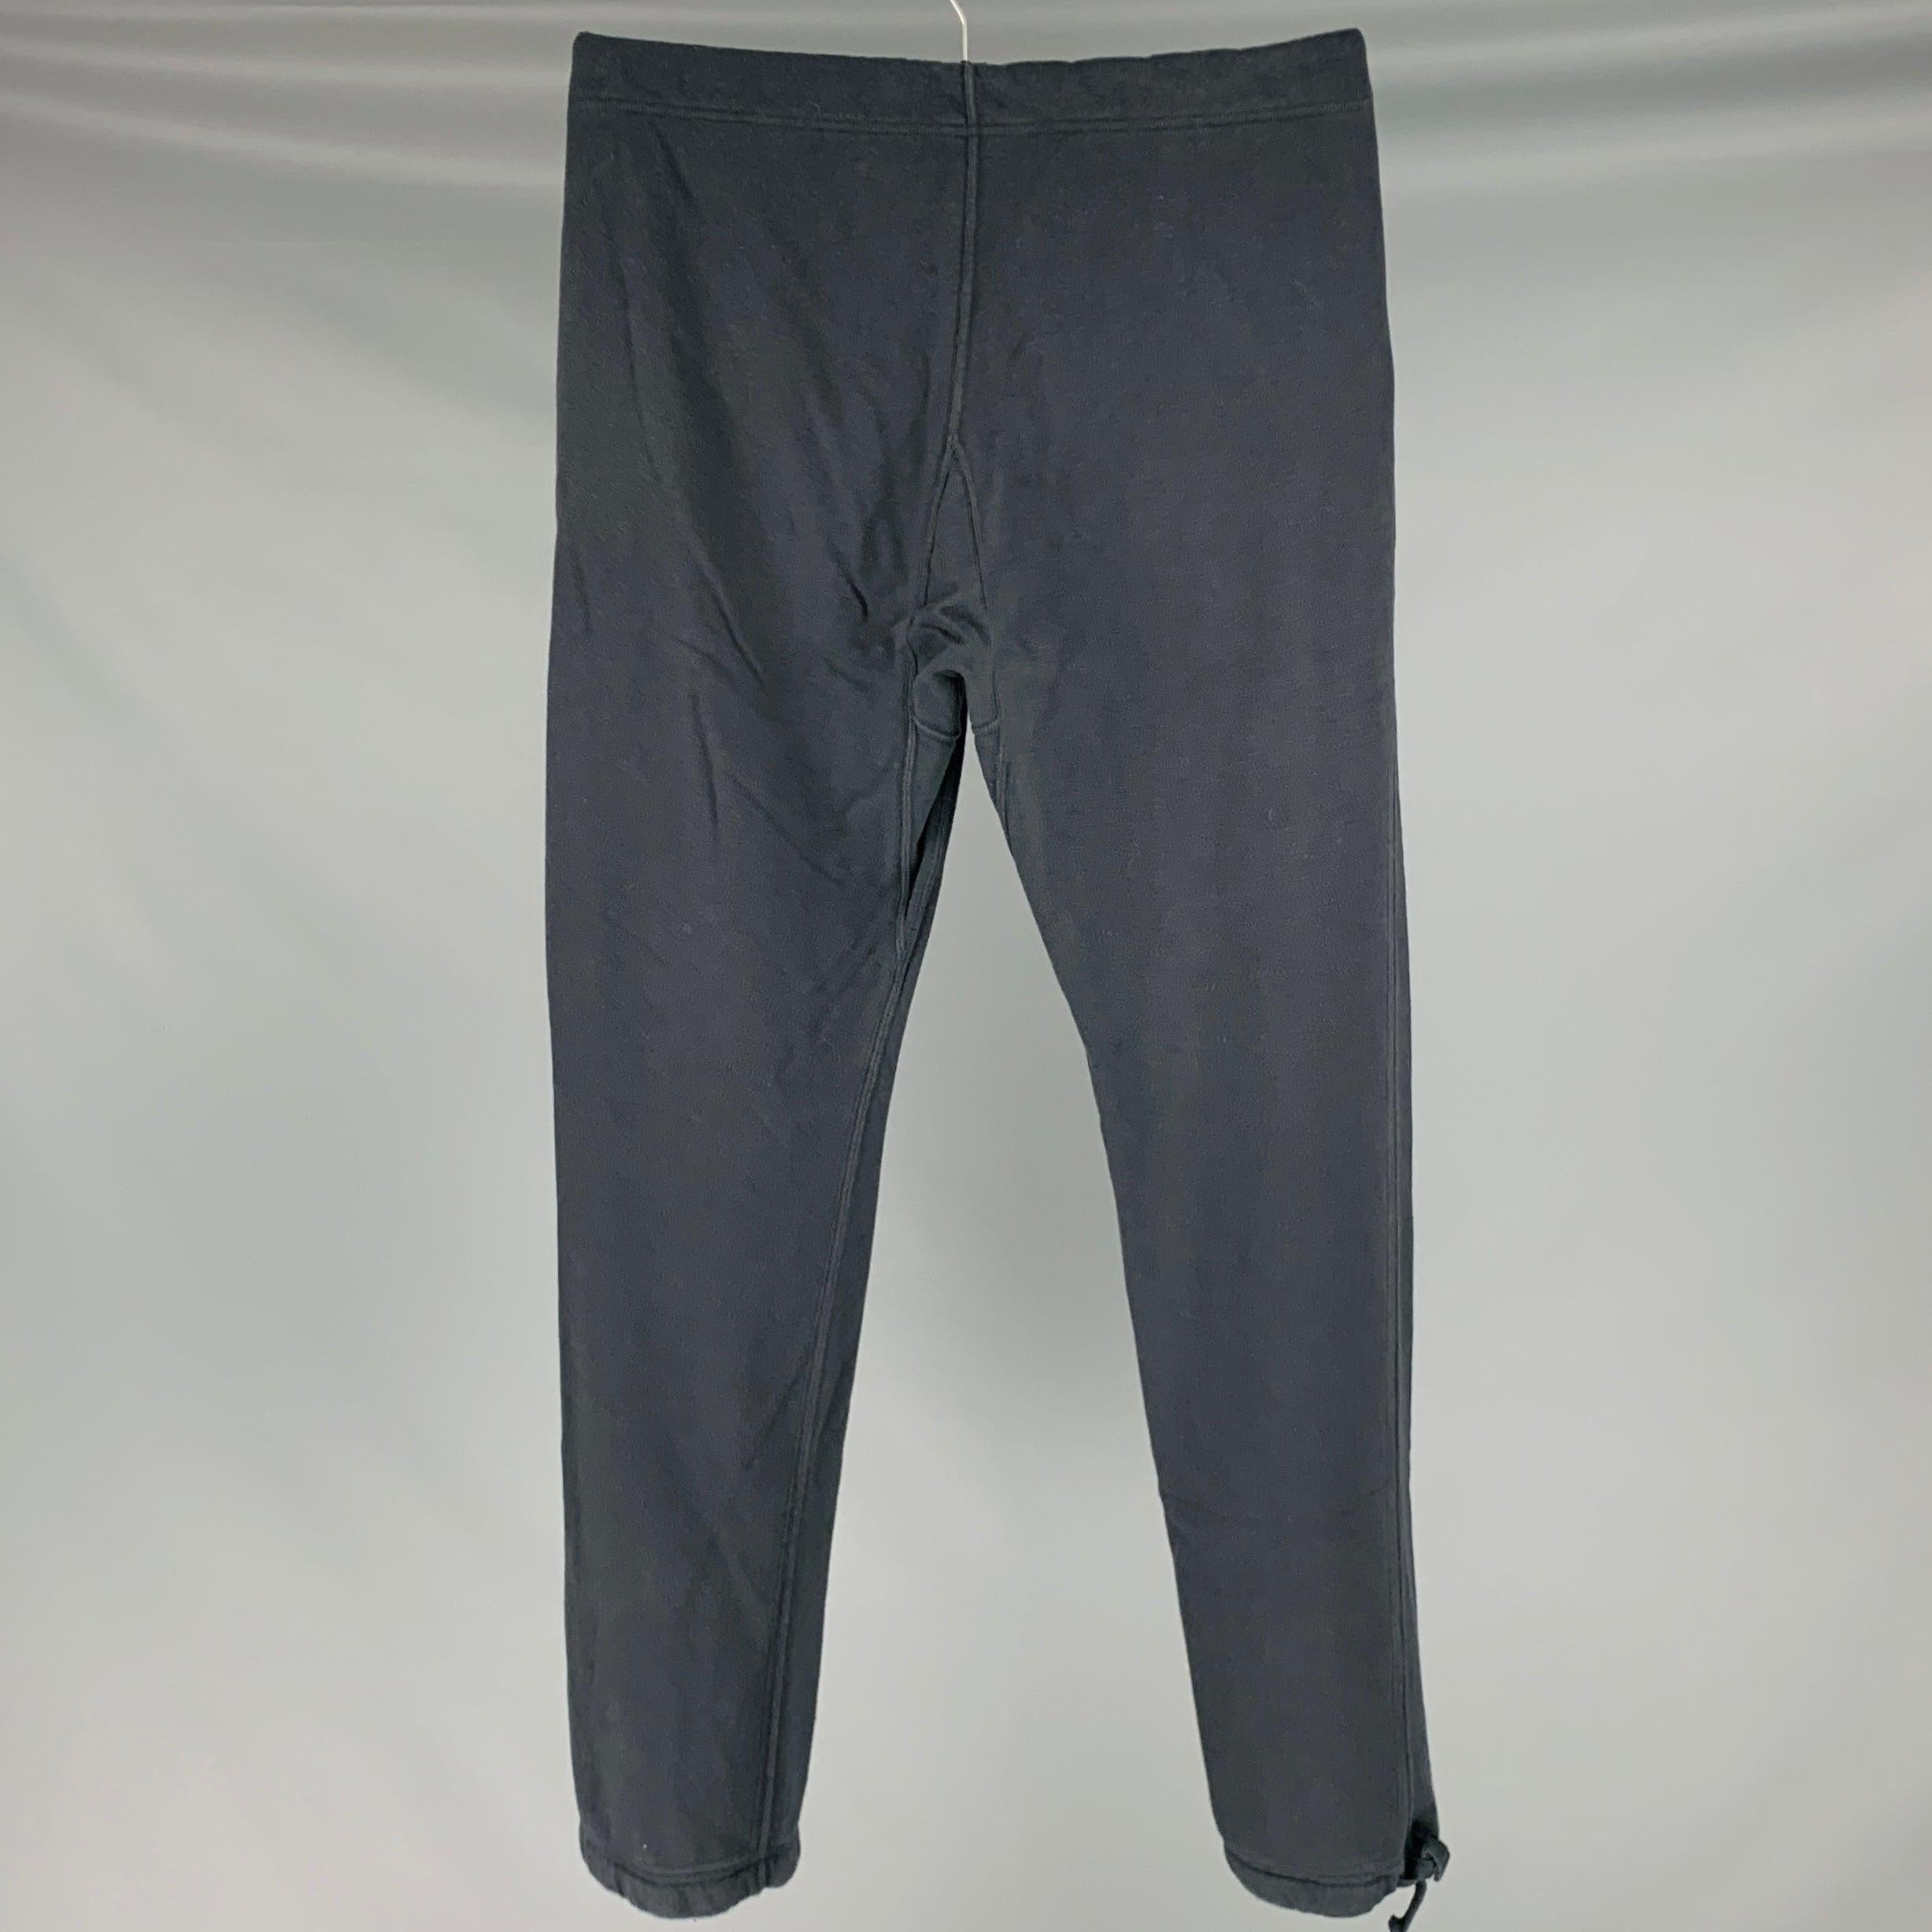 VISVIM -Sweat Pants DMGD- Size S Black Wash Cotton Drawstring Casual Pants en vente 2